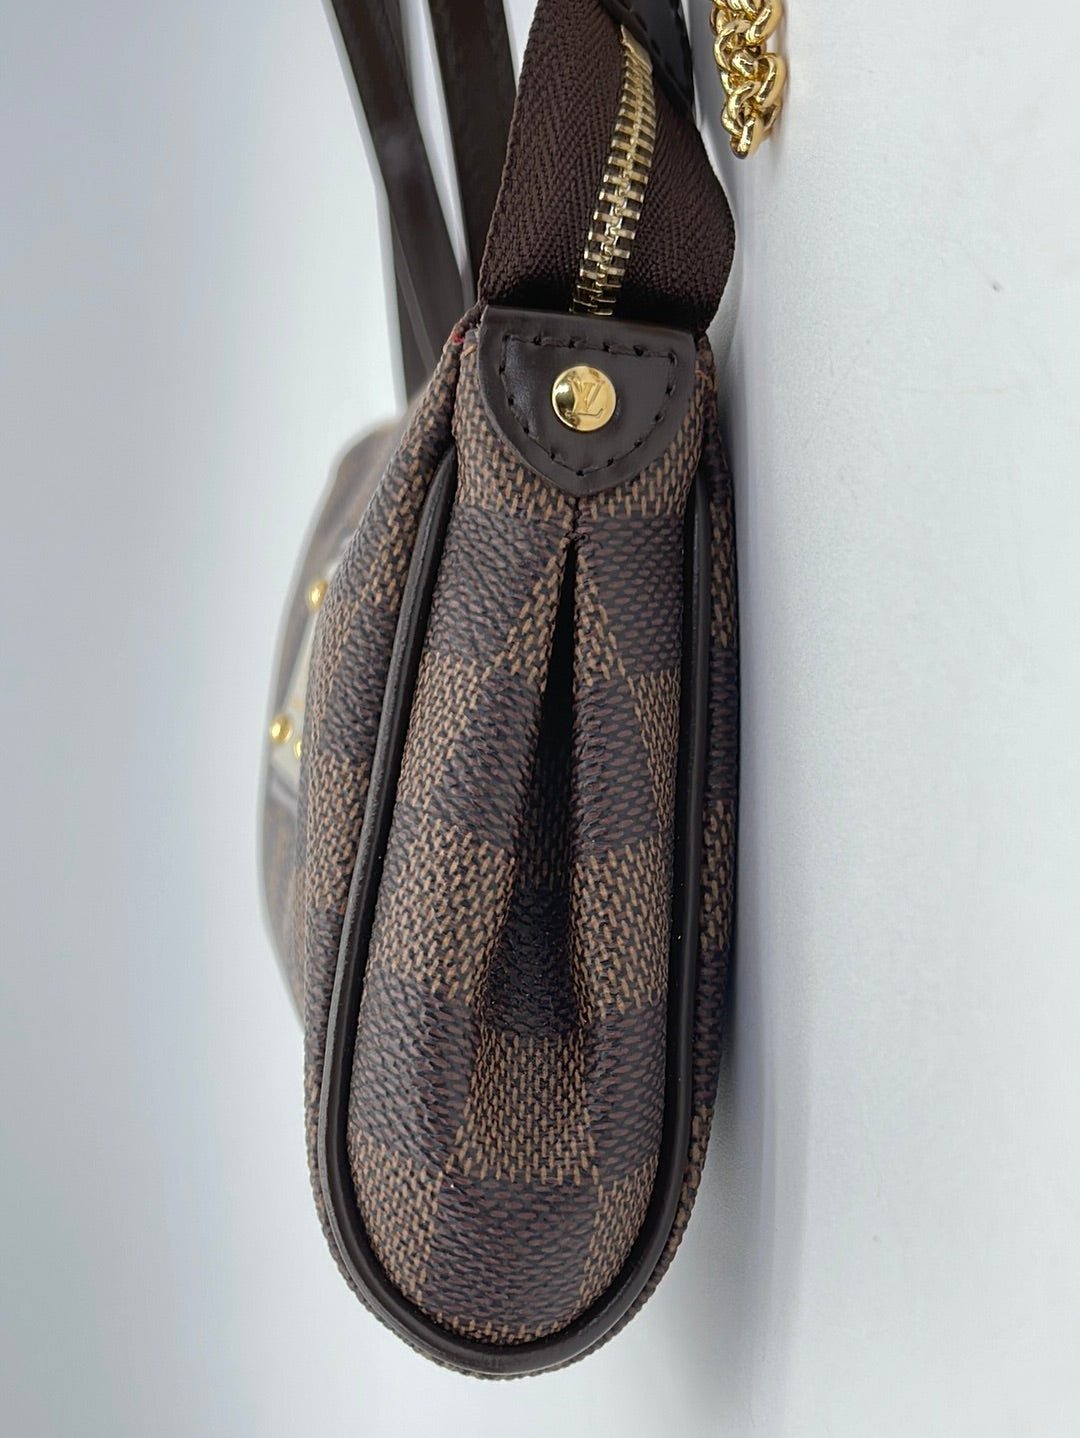 PRELOVED Louis Vuitton Eva Handbag Damier Ebene Canvas Crossbody Bag SD0121 020524